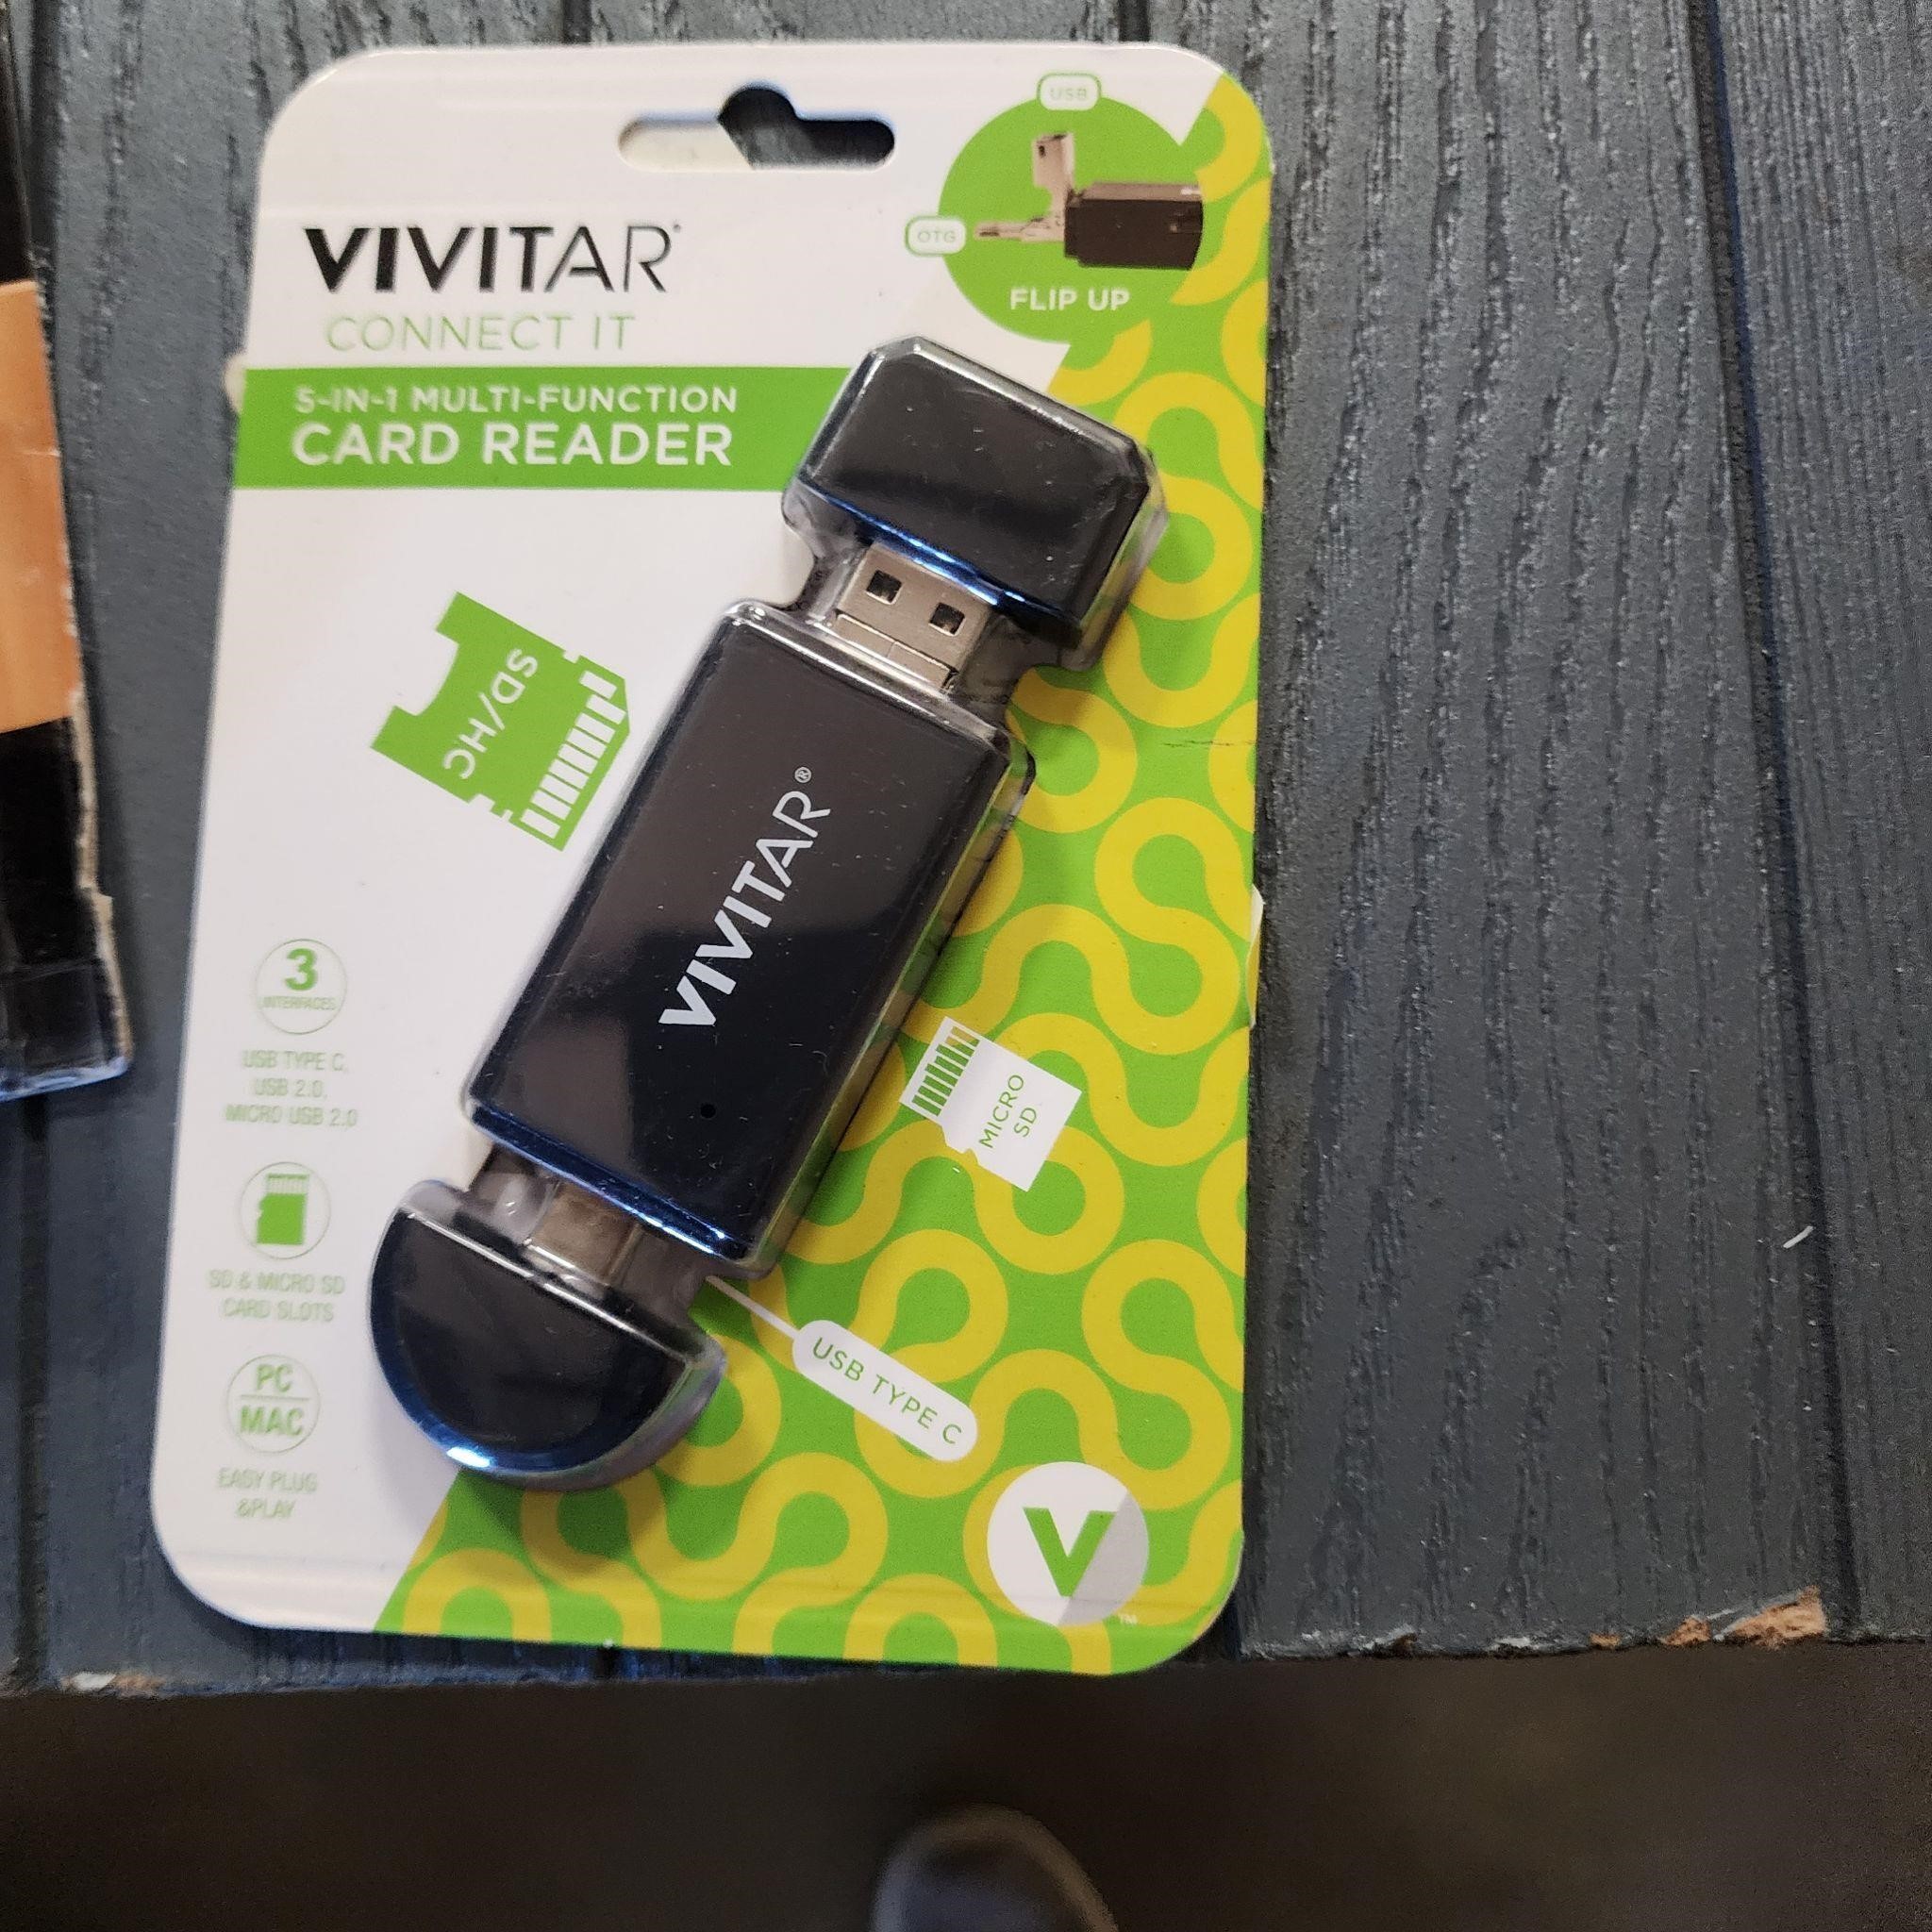 Vivatar 5 in 1 multi function card reader